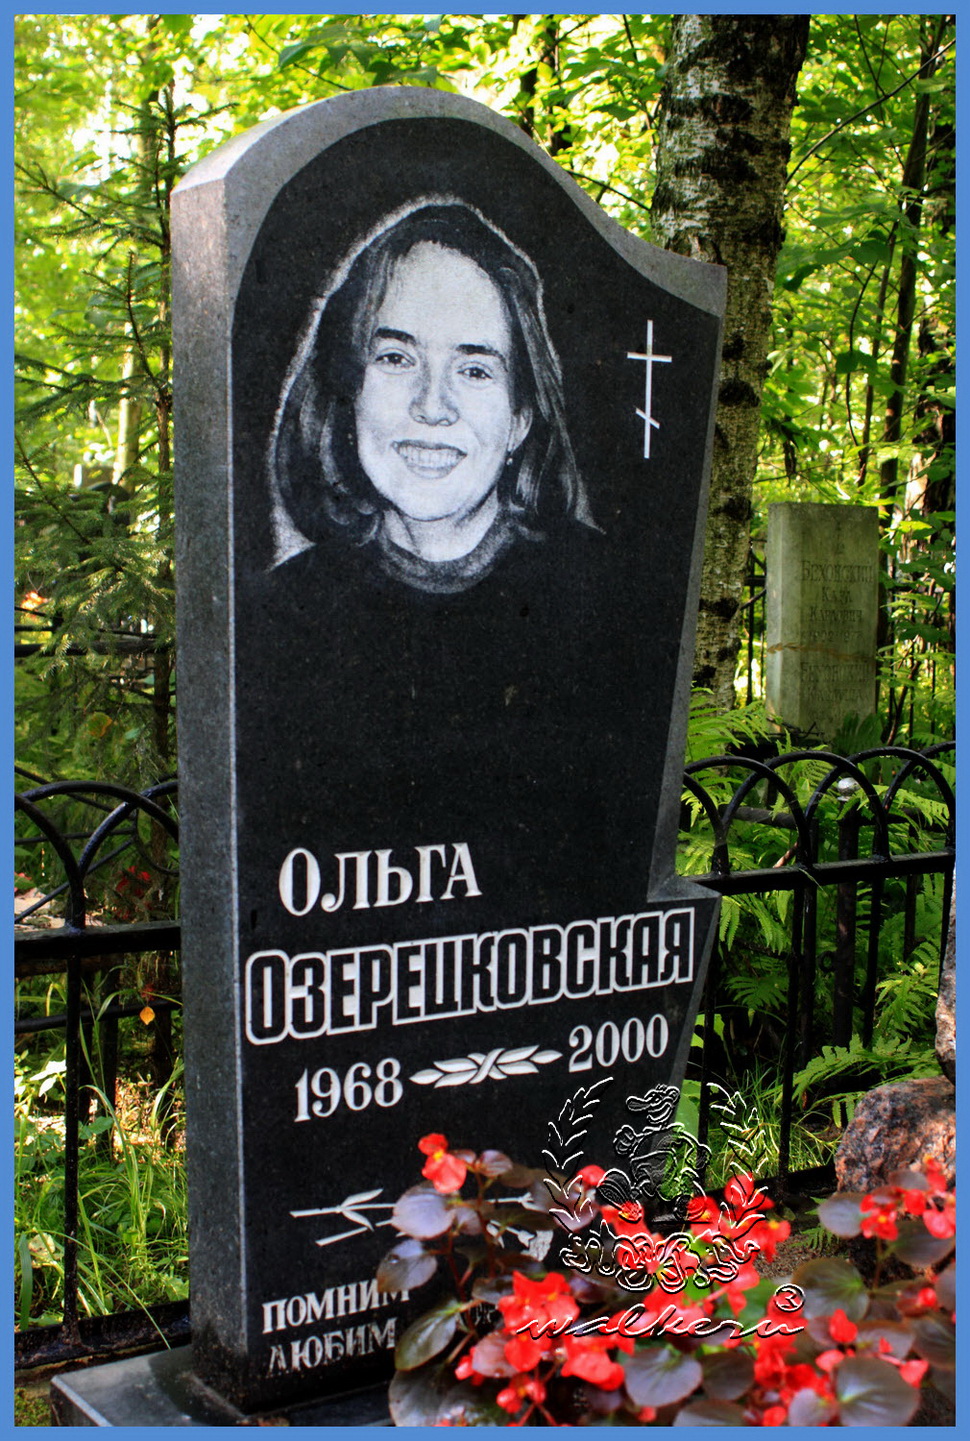 Ольга Озерецковская могила